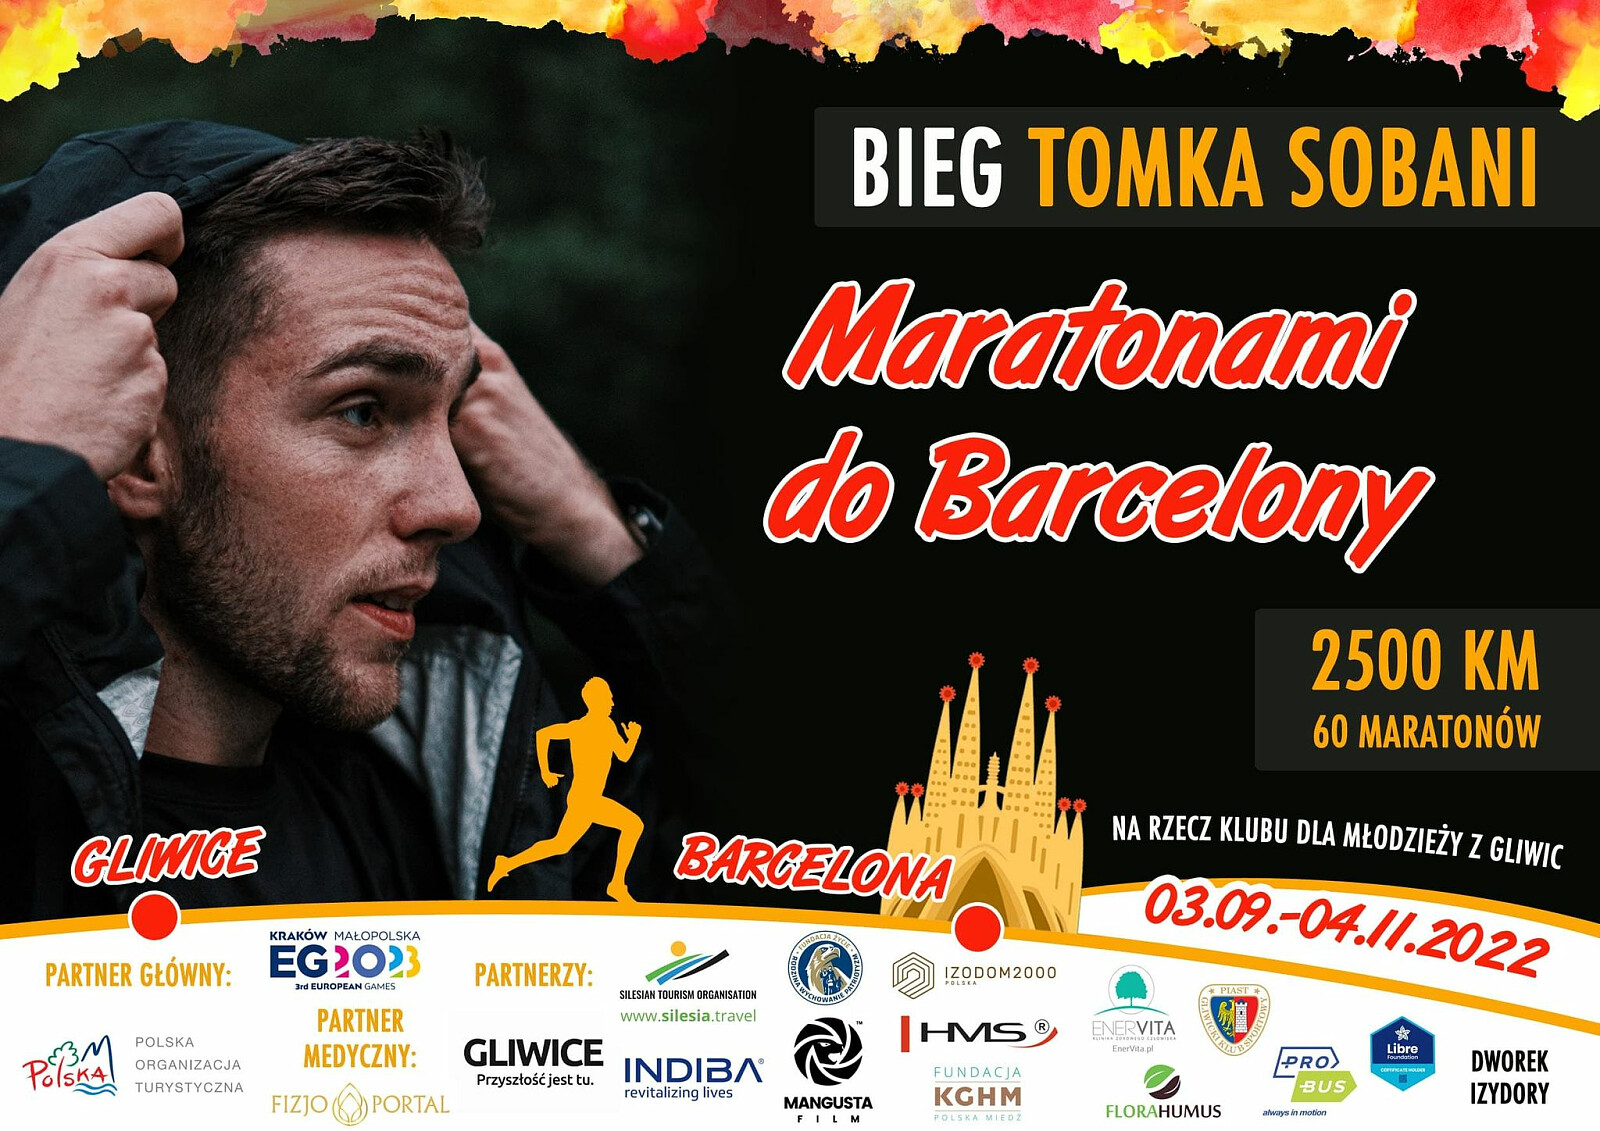 Plakat towarzyszący akcji biegowej Tomasza Sobani